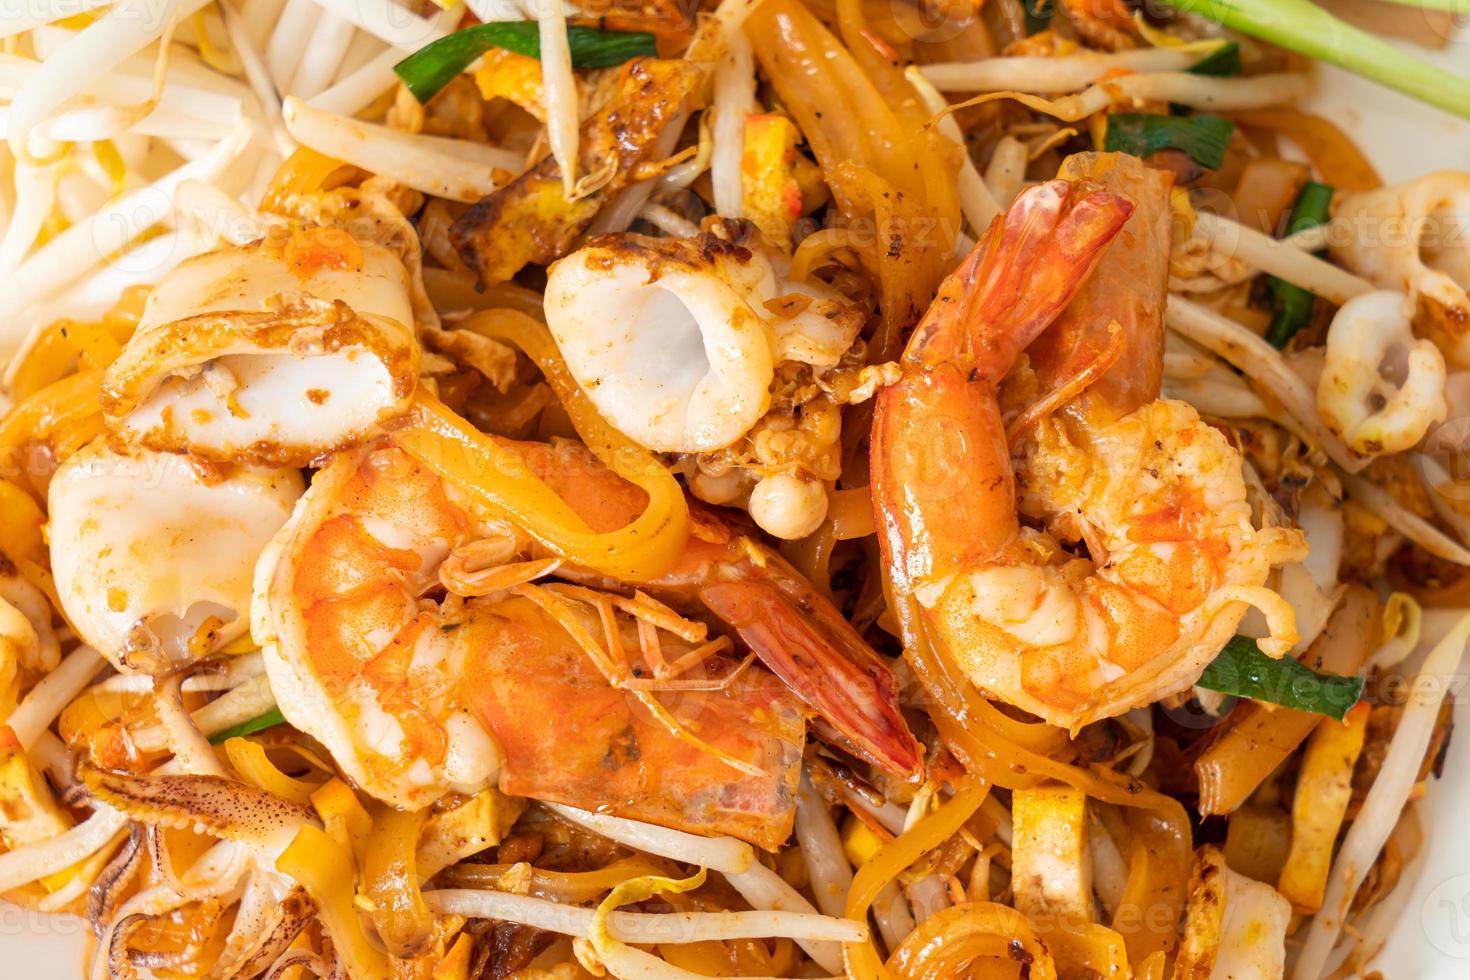 pad thai mariscos - fideos salteados con camarones, calamares o pulpo foto